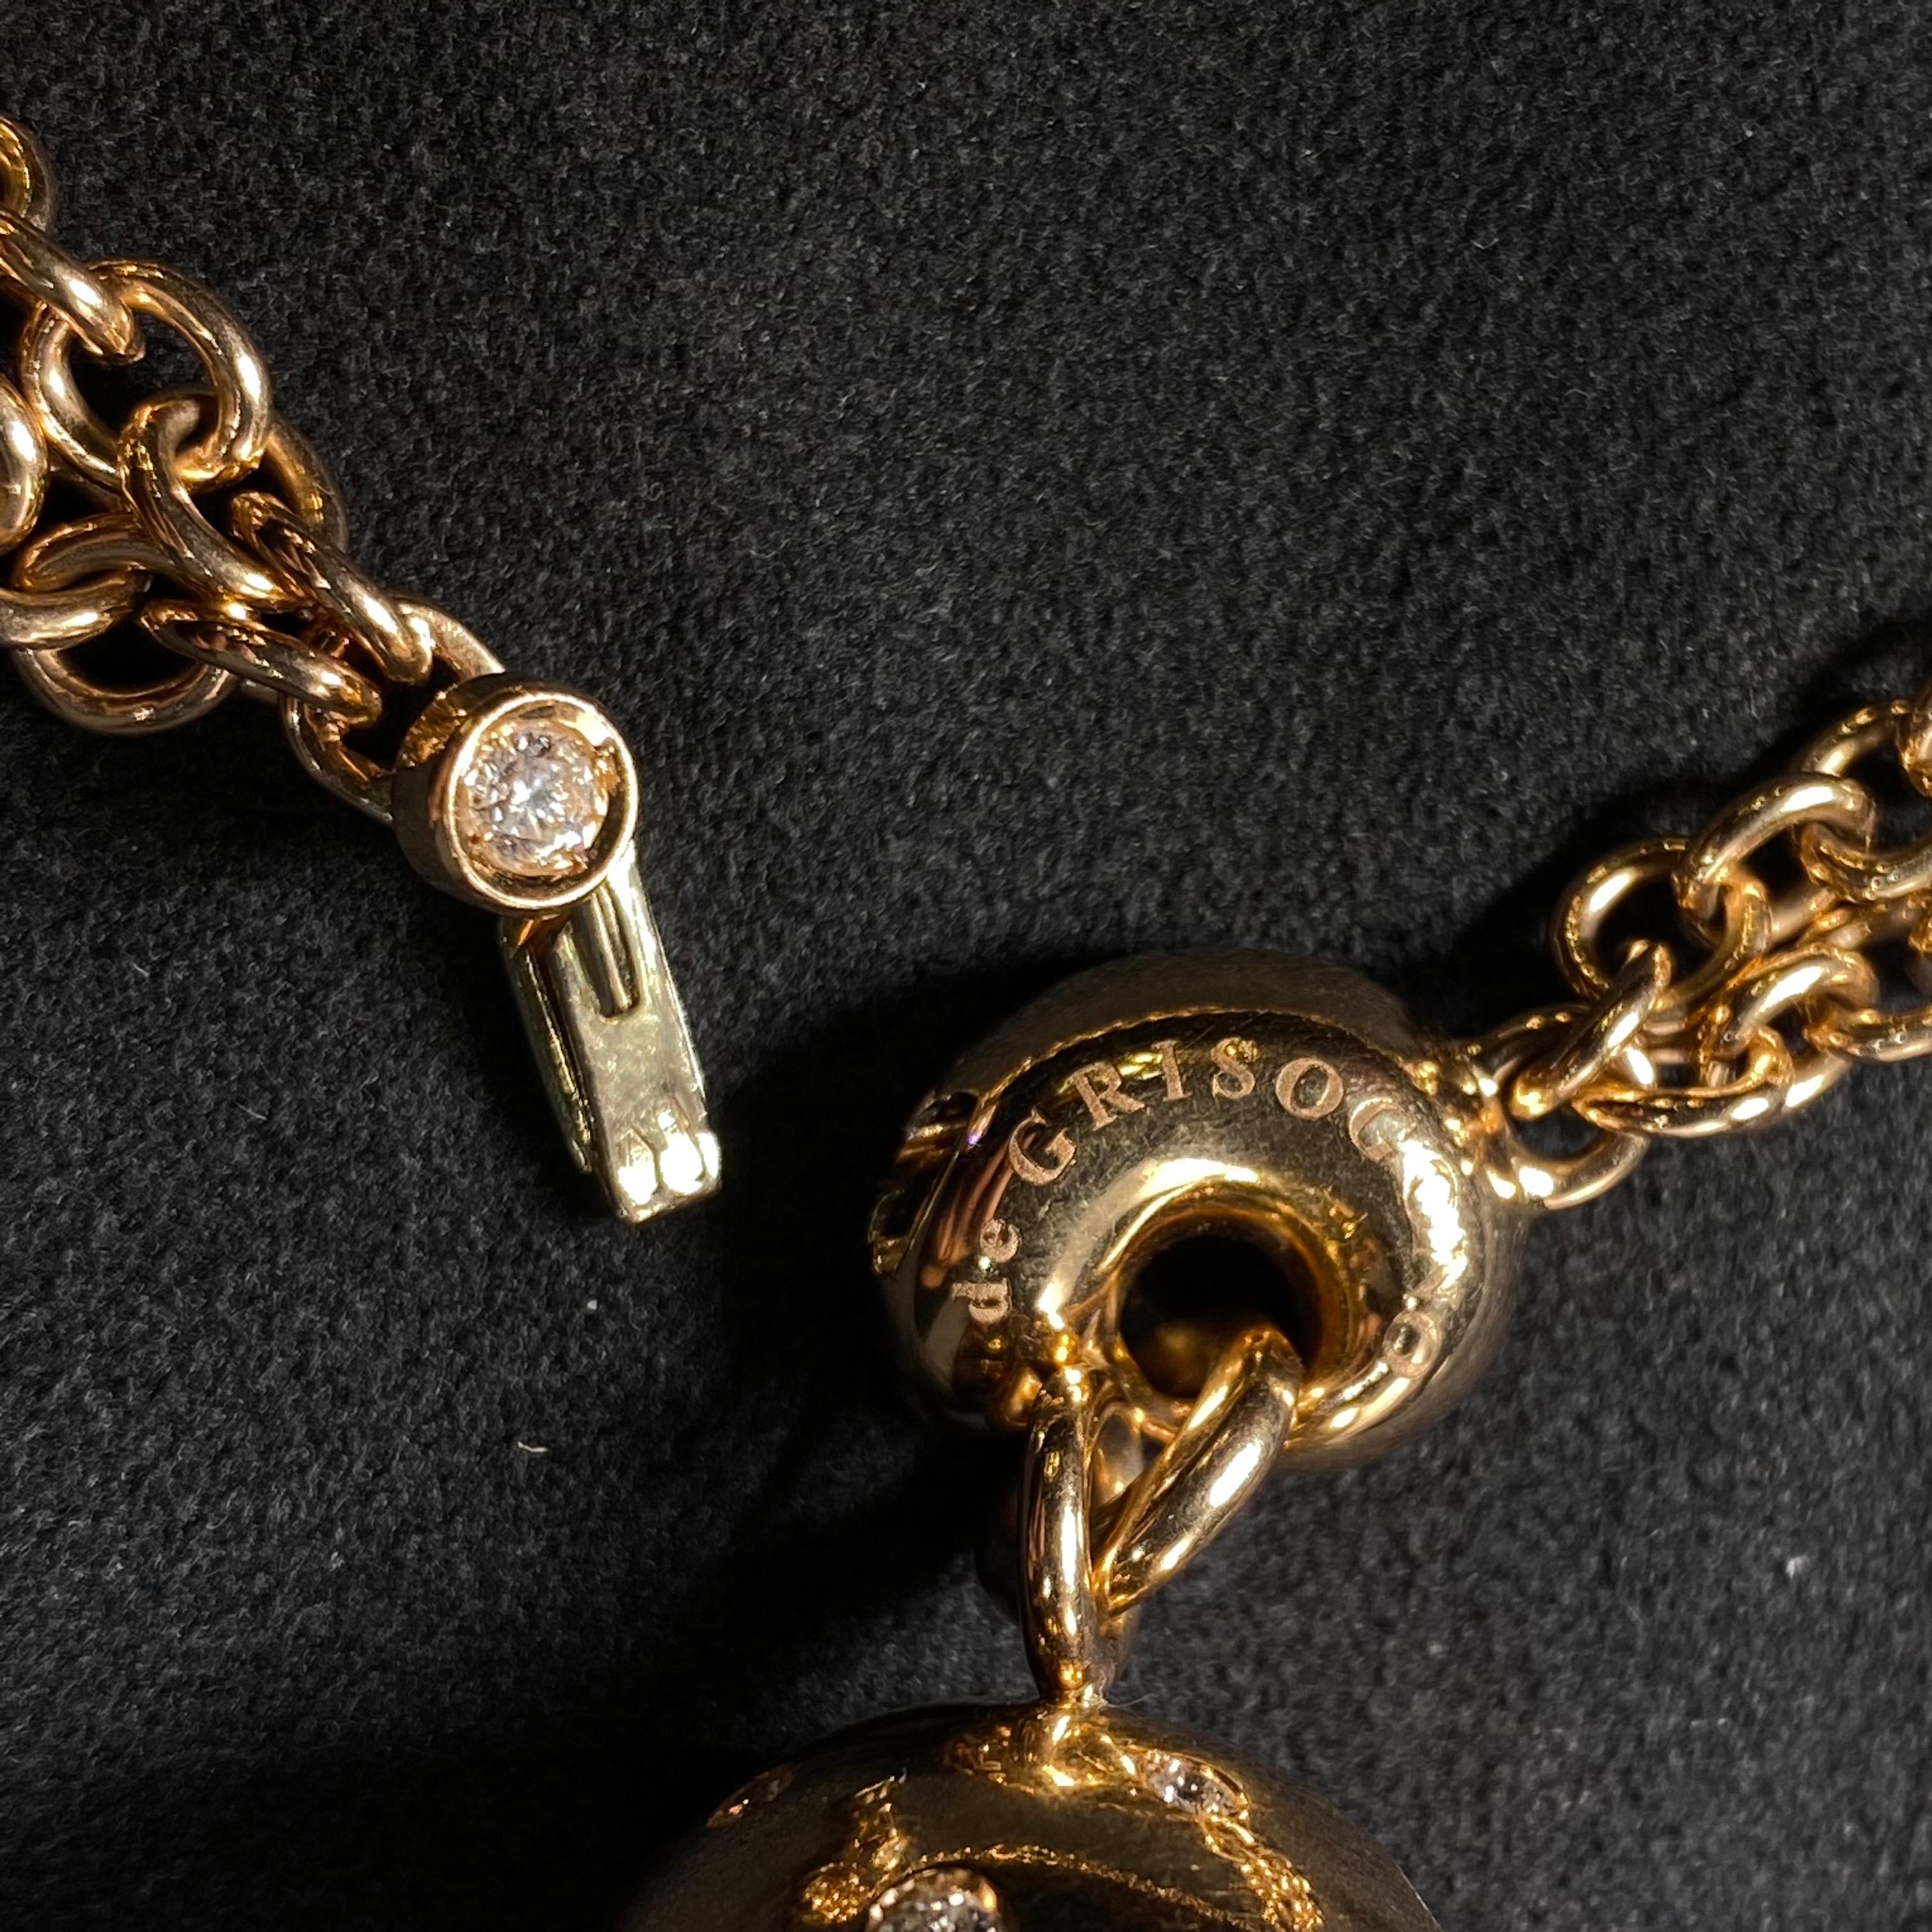 de GRISOGONO Round Brilliant Cut Diamond Boule Charm Pendant Necklace Rose Gold 8